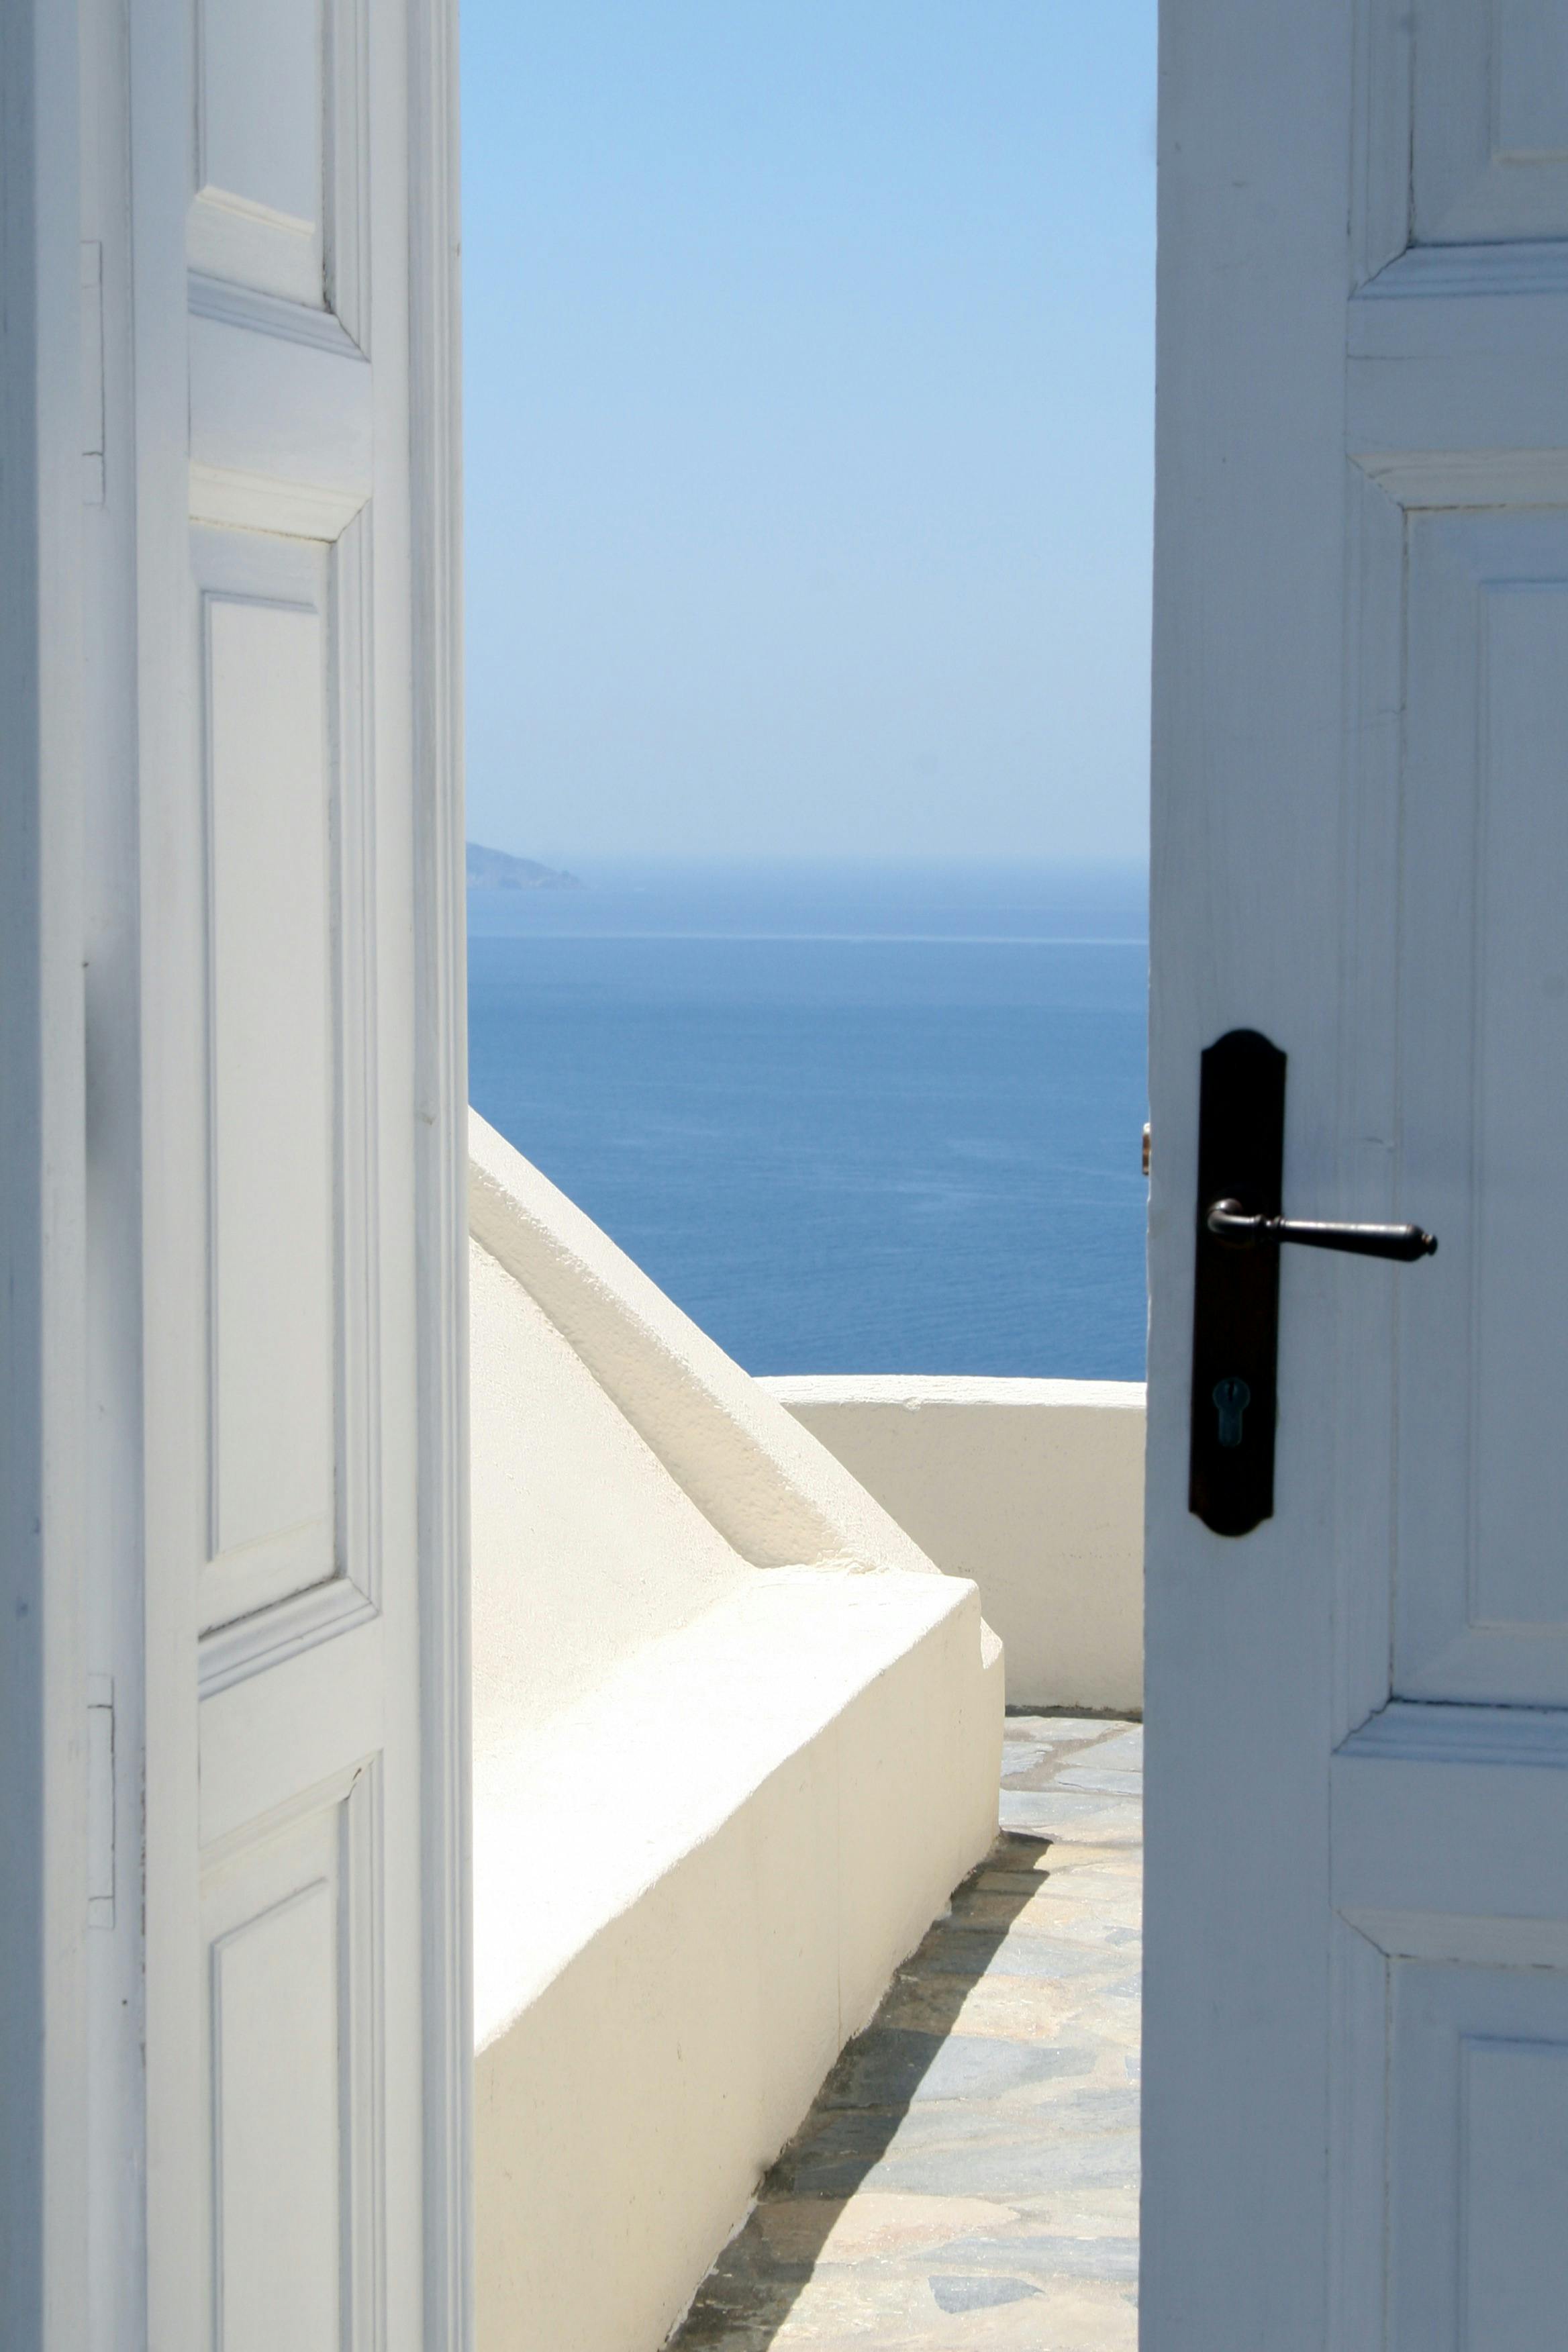 Open Door Photos, Download The BEST Free Open Door Stock Photos & HD Images